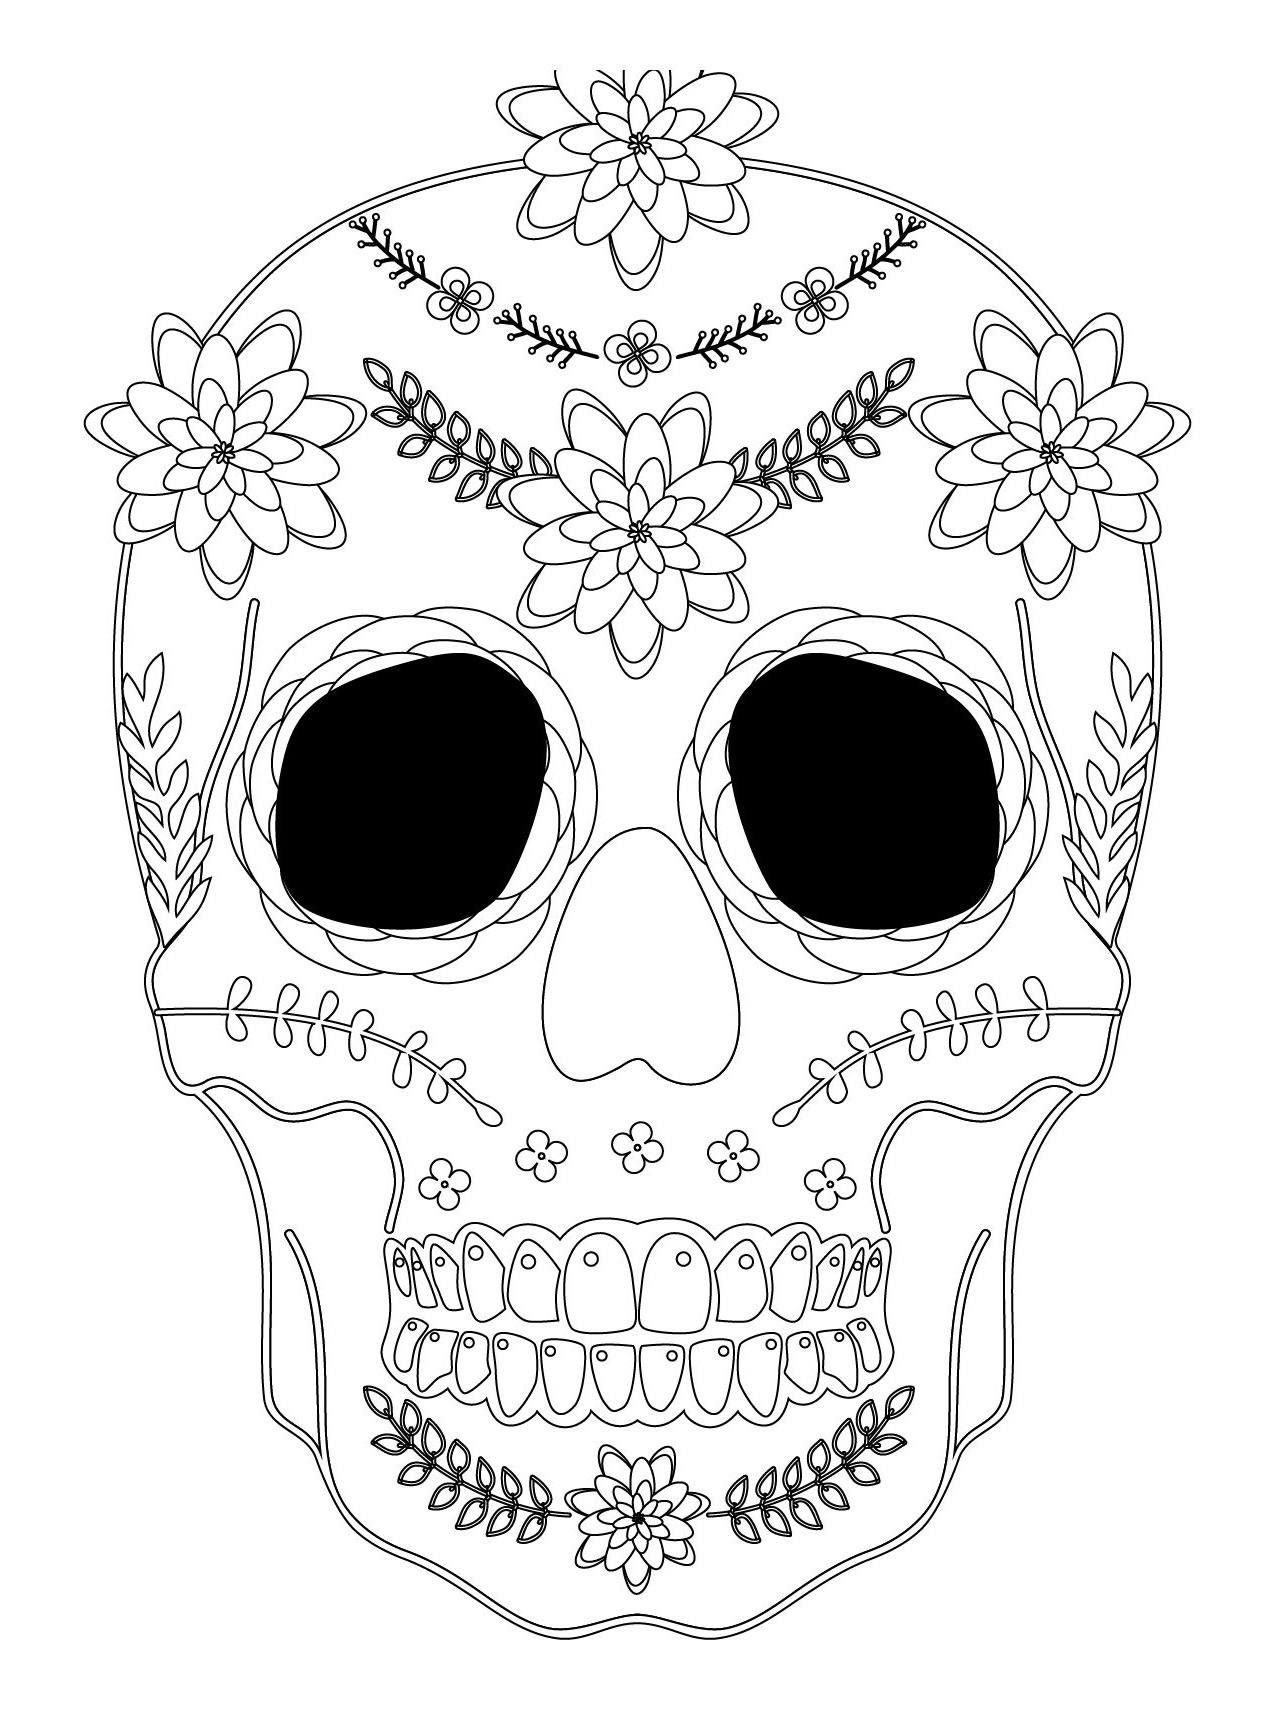 Dessin D&amp;#039;Halloween Qui Fait Peur Impressionnant Images Sugar Skull destiné Coloriage Qui Fait Peur